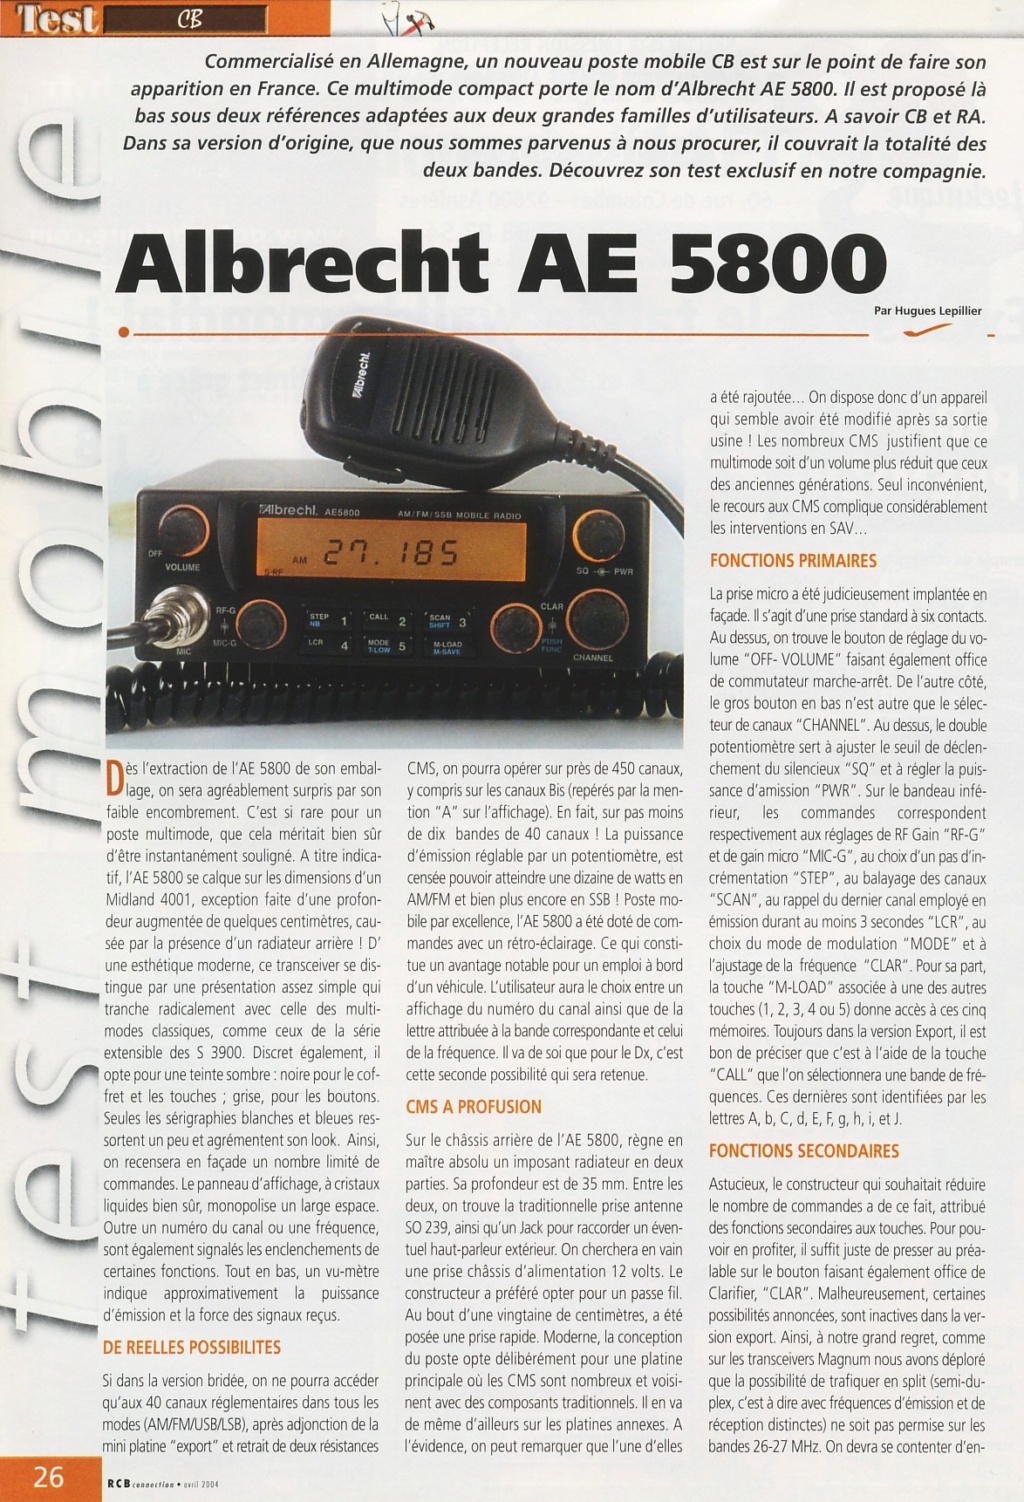 5800 - Albrecht AE 5800 EU (Mobile) Ae580010